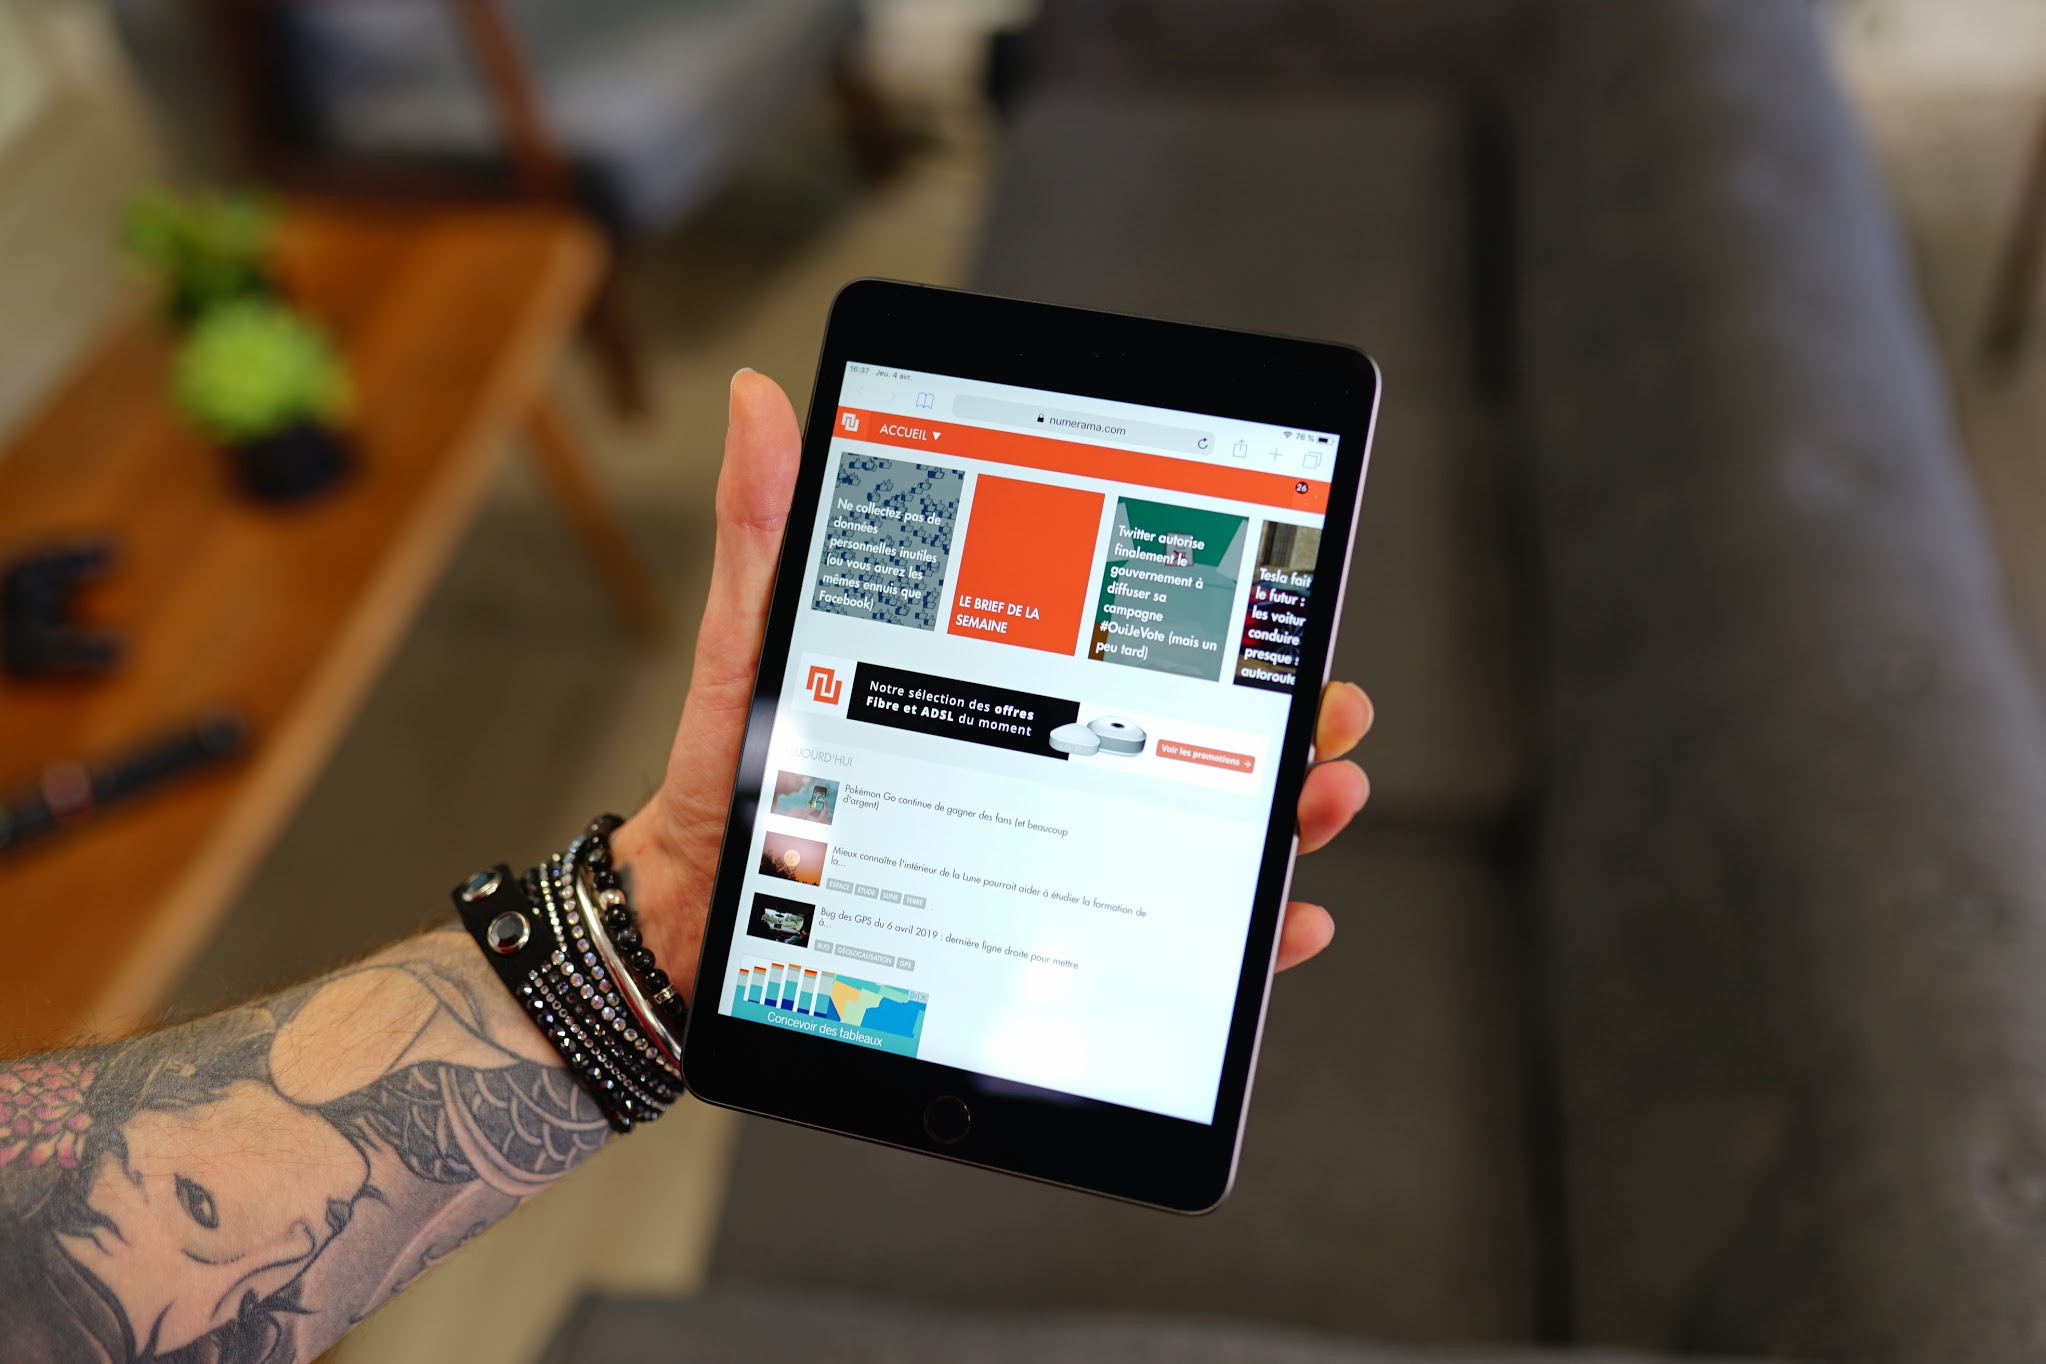 Revue de tests : iPad mini 5, une petite tablette « sans concurrence »